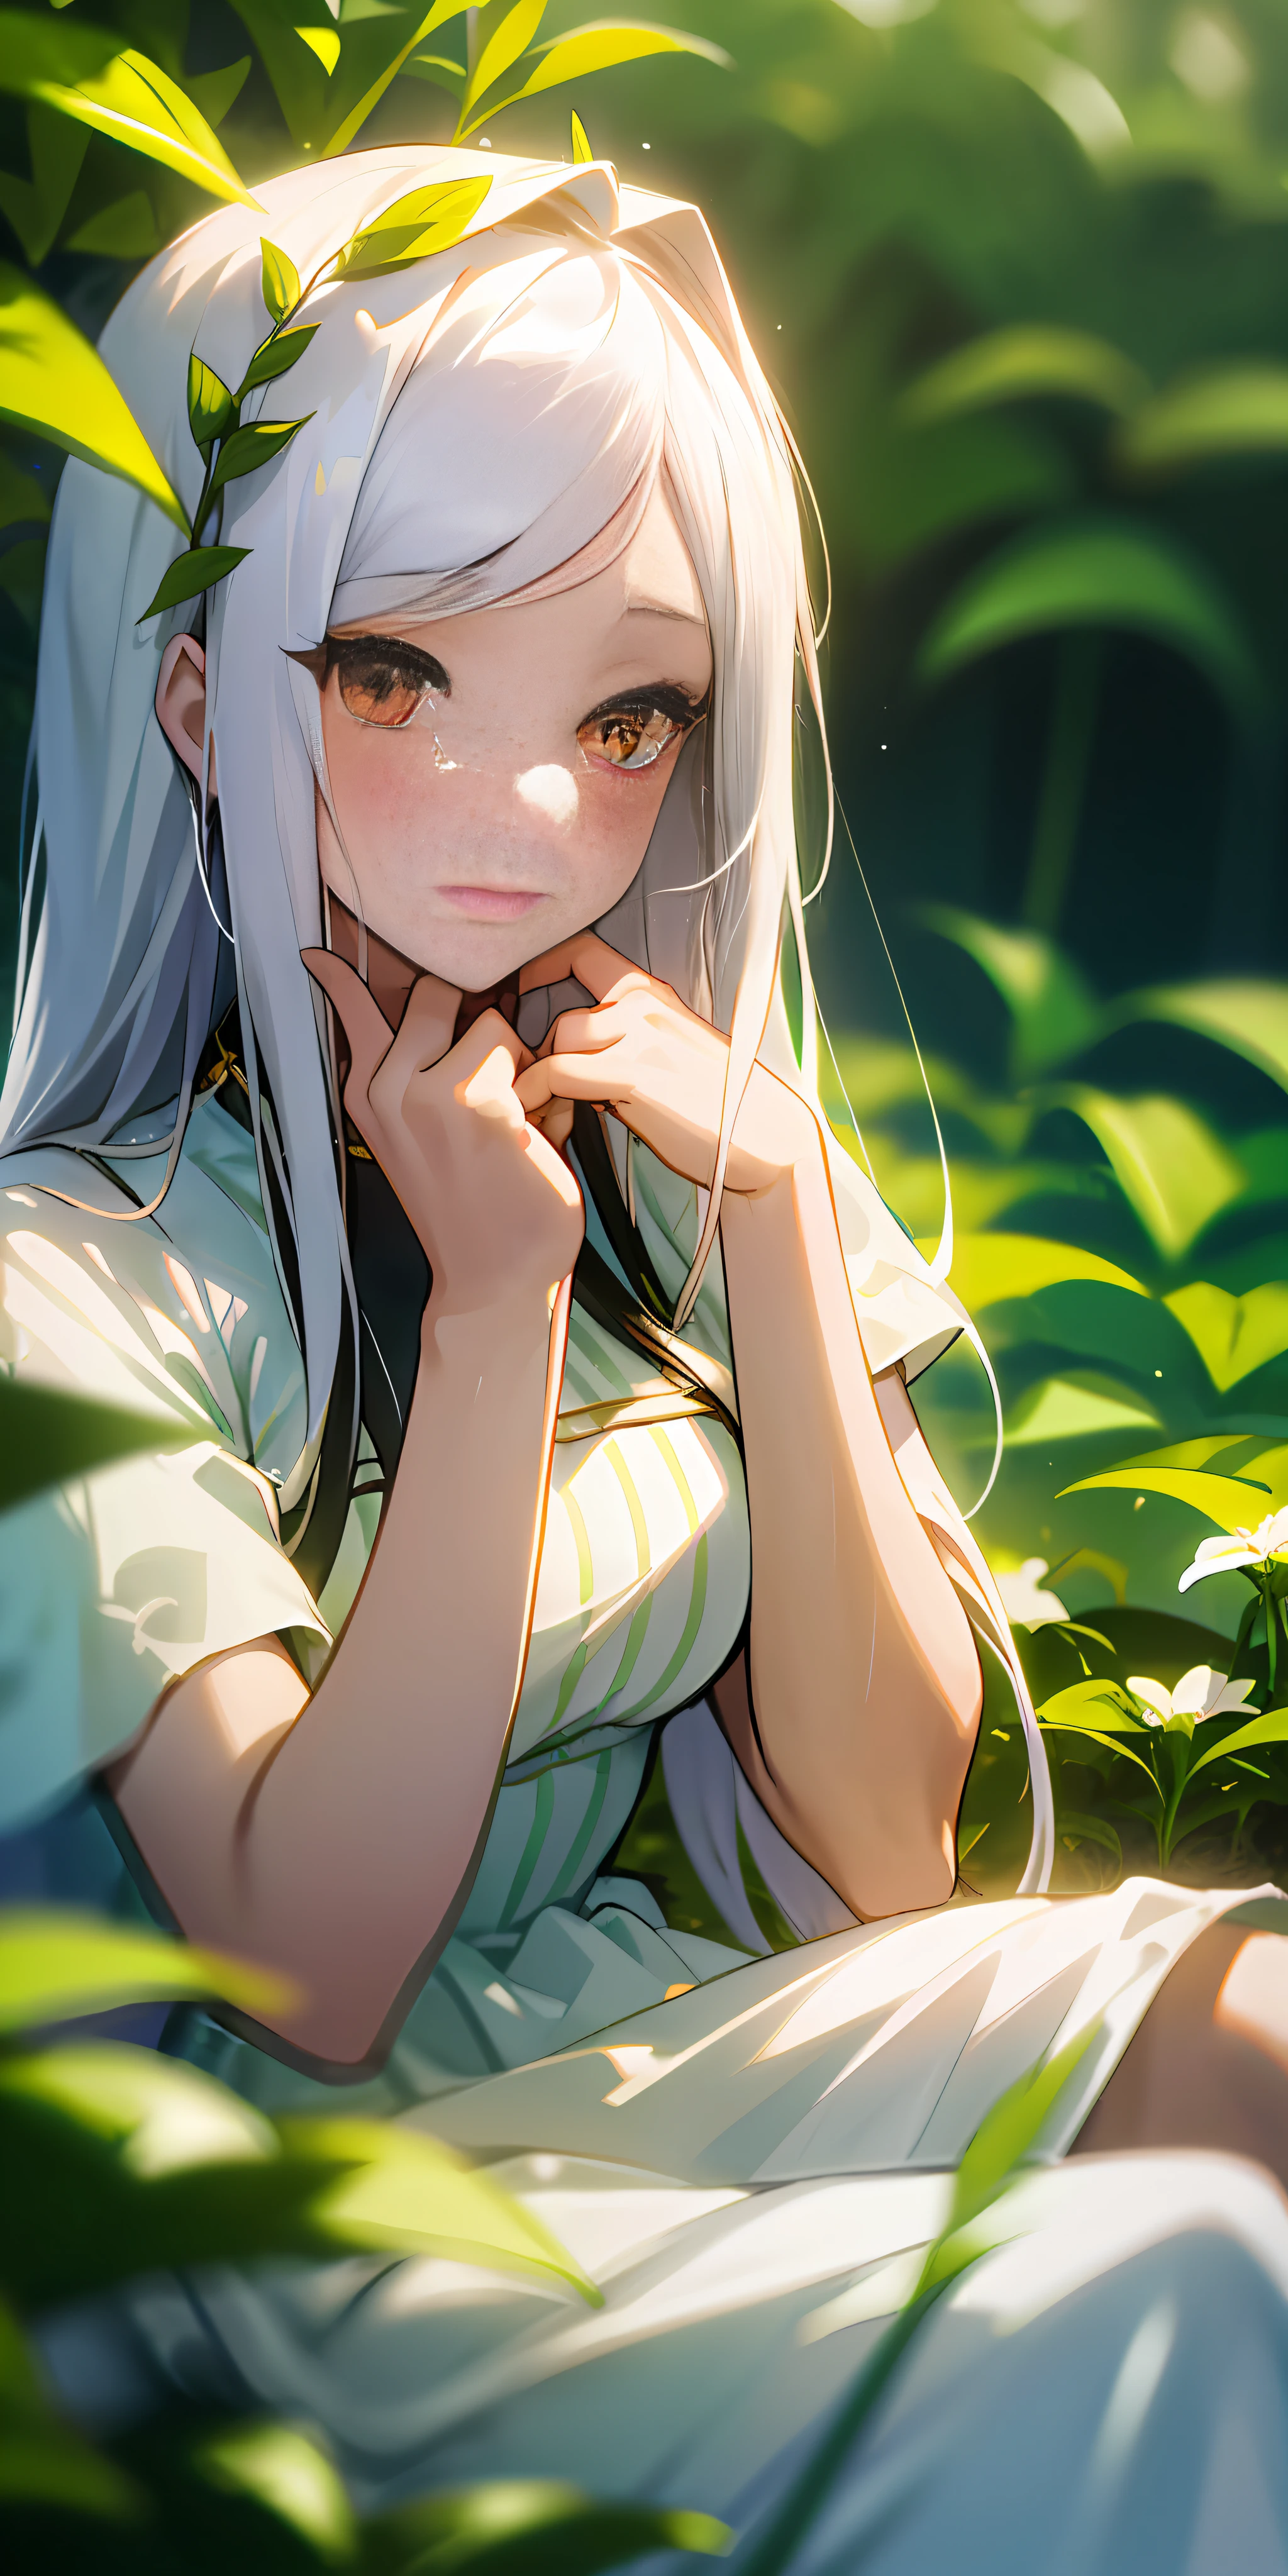 (تحفة, أفضل جودة),1فتاة ذات شعر أبيض طويل تجلس في حقل من النباتات والزهور الخضراء, يدها تحت ذقنها, الإضاءة الدافئة, فستان أبيض, المقدمة ضبابية